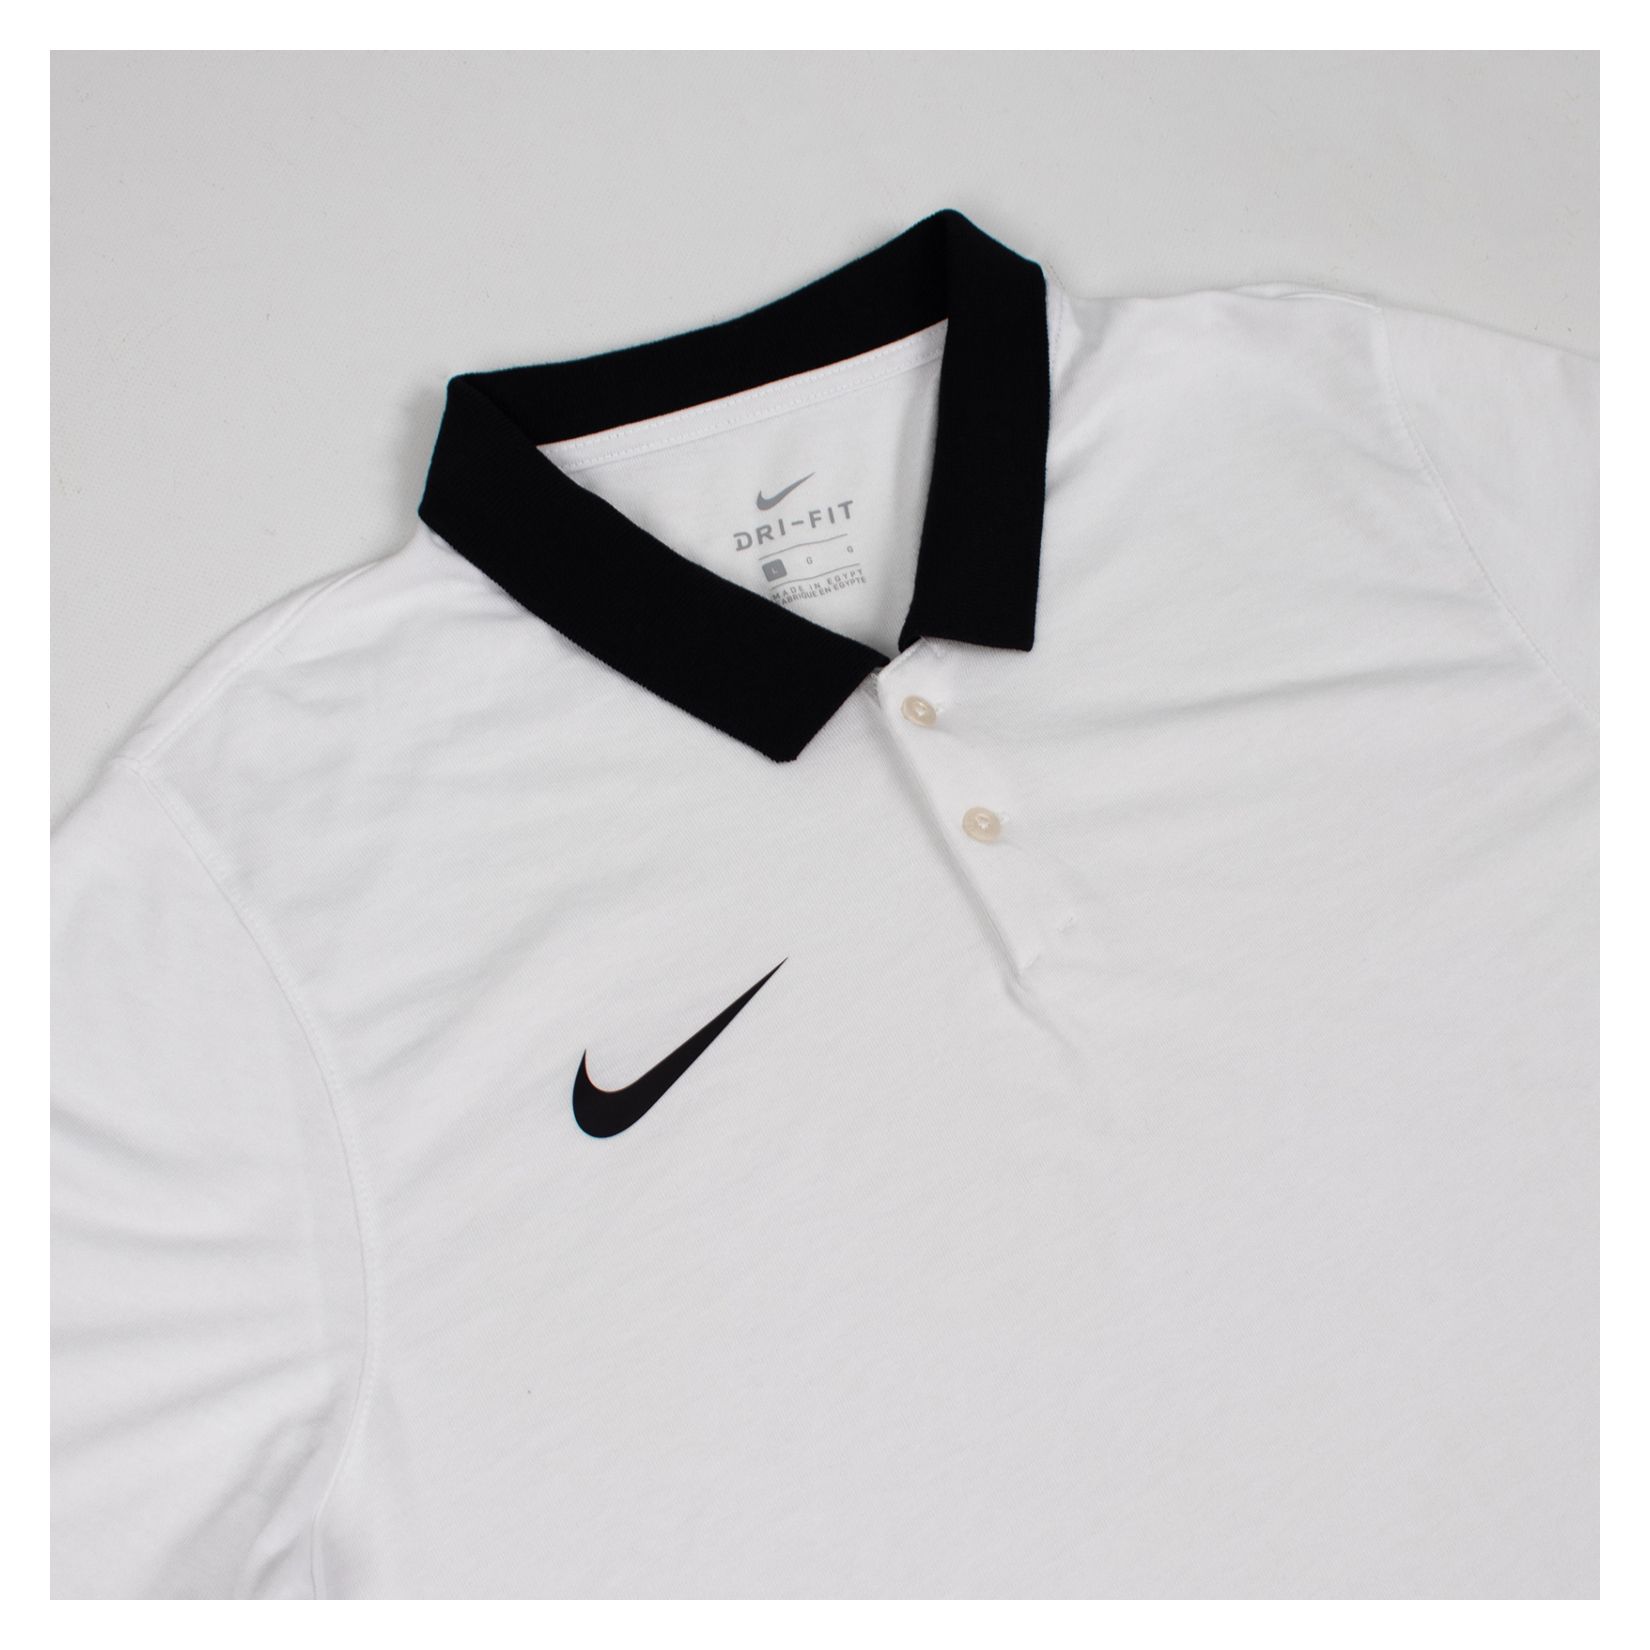 Nike Dri-FIT Park Poly Cotton Polo (M)